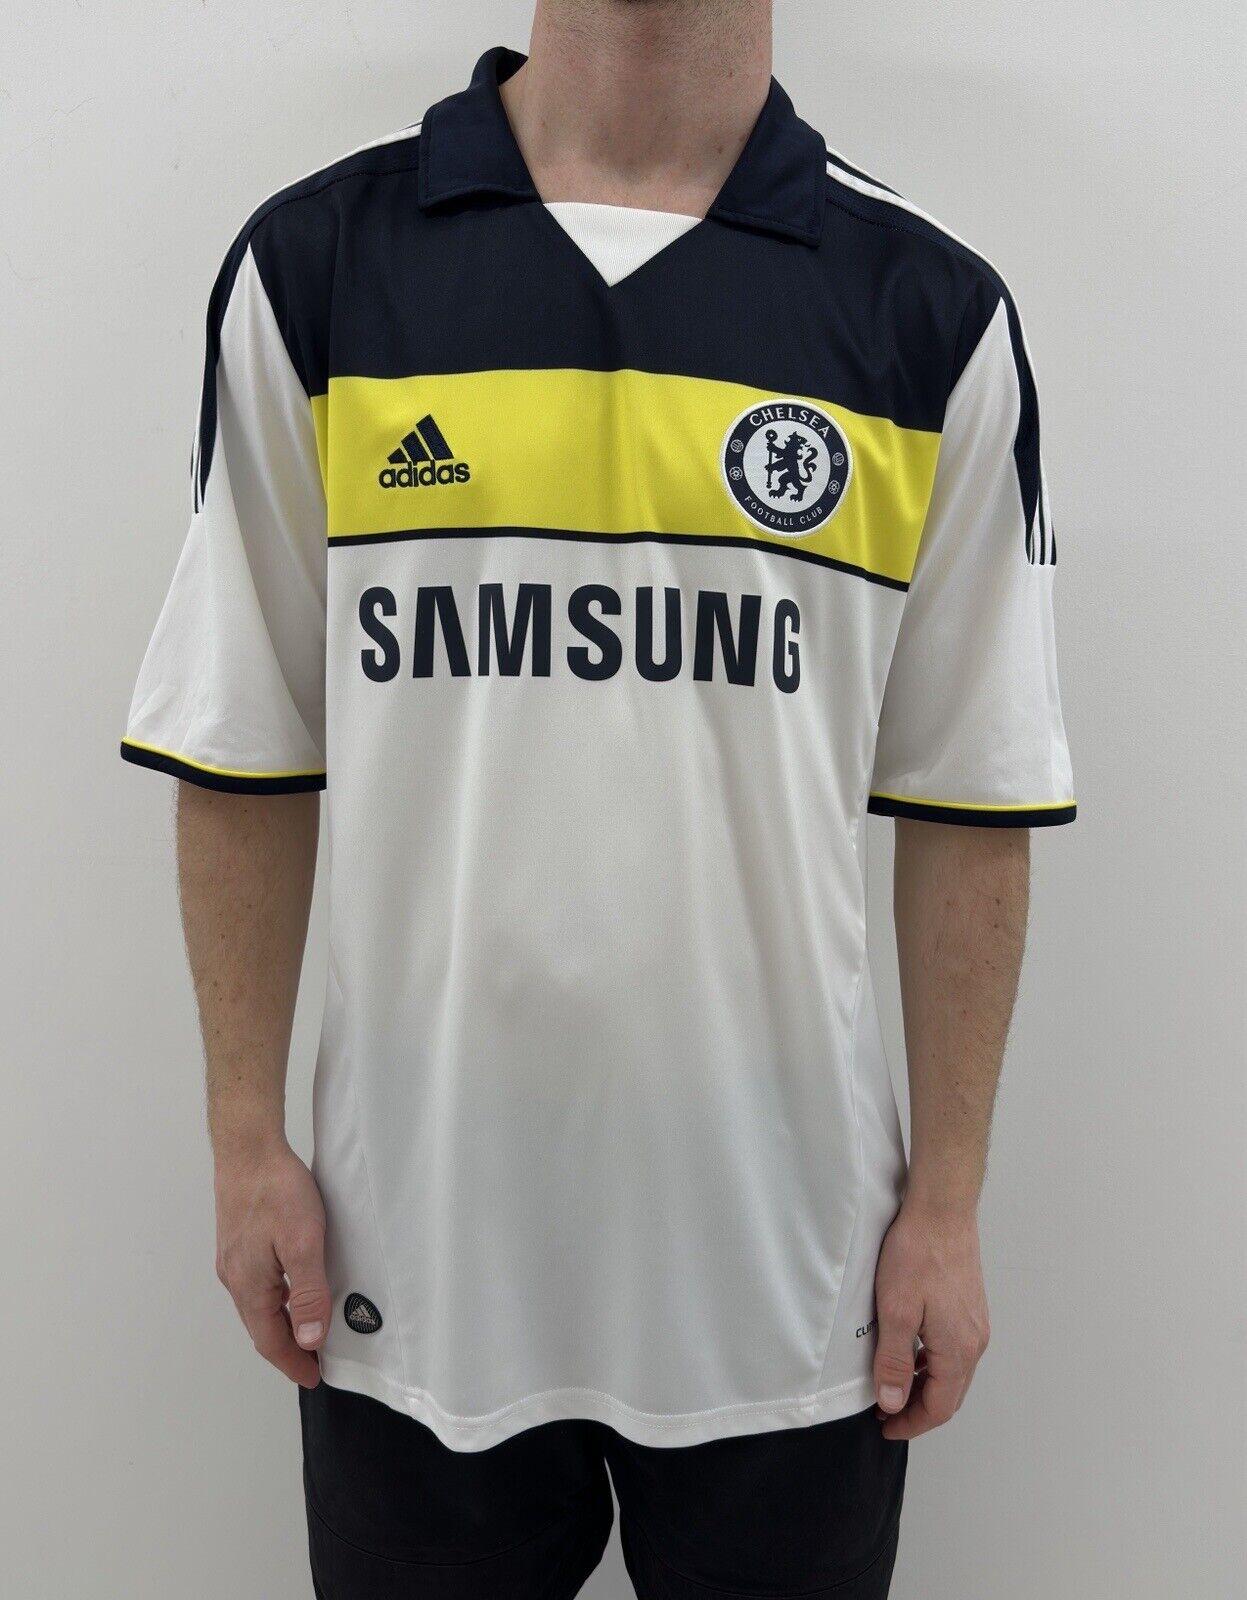 Fc Chelsea 2011 2012 Third Jersey Shirt Adidas Soccer Football